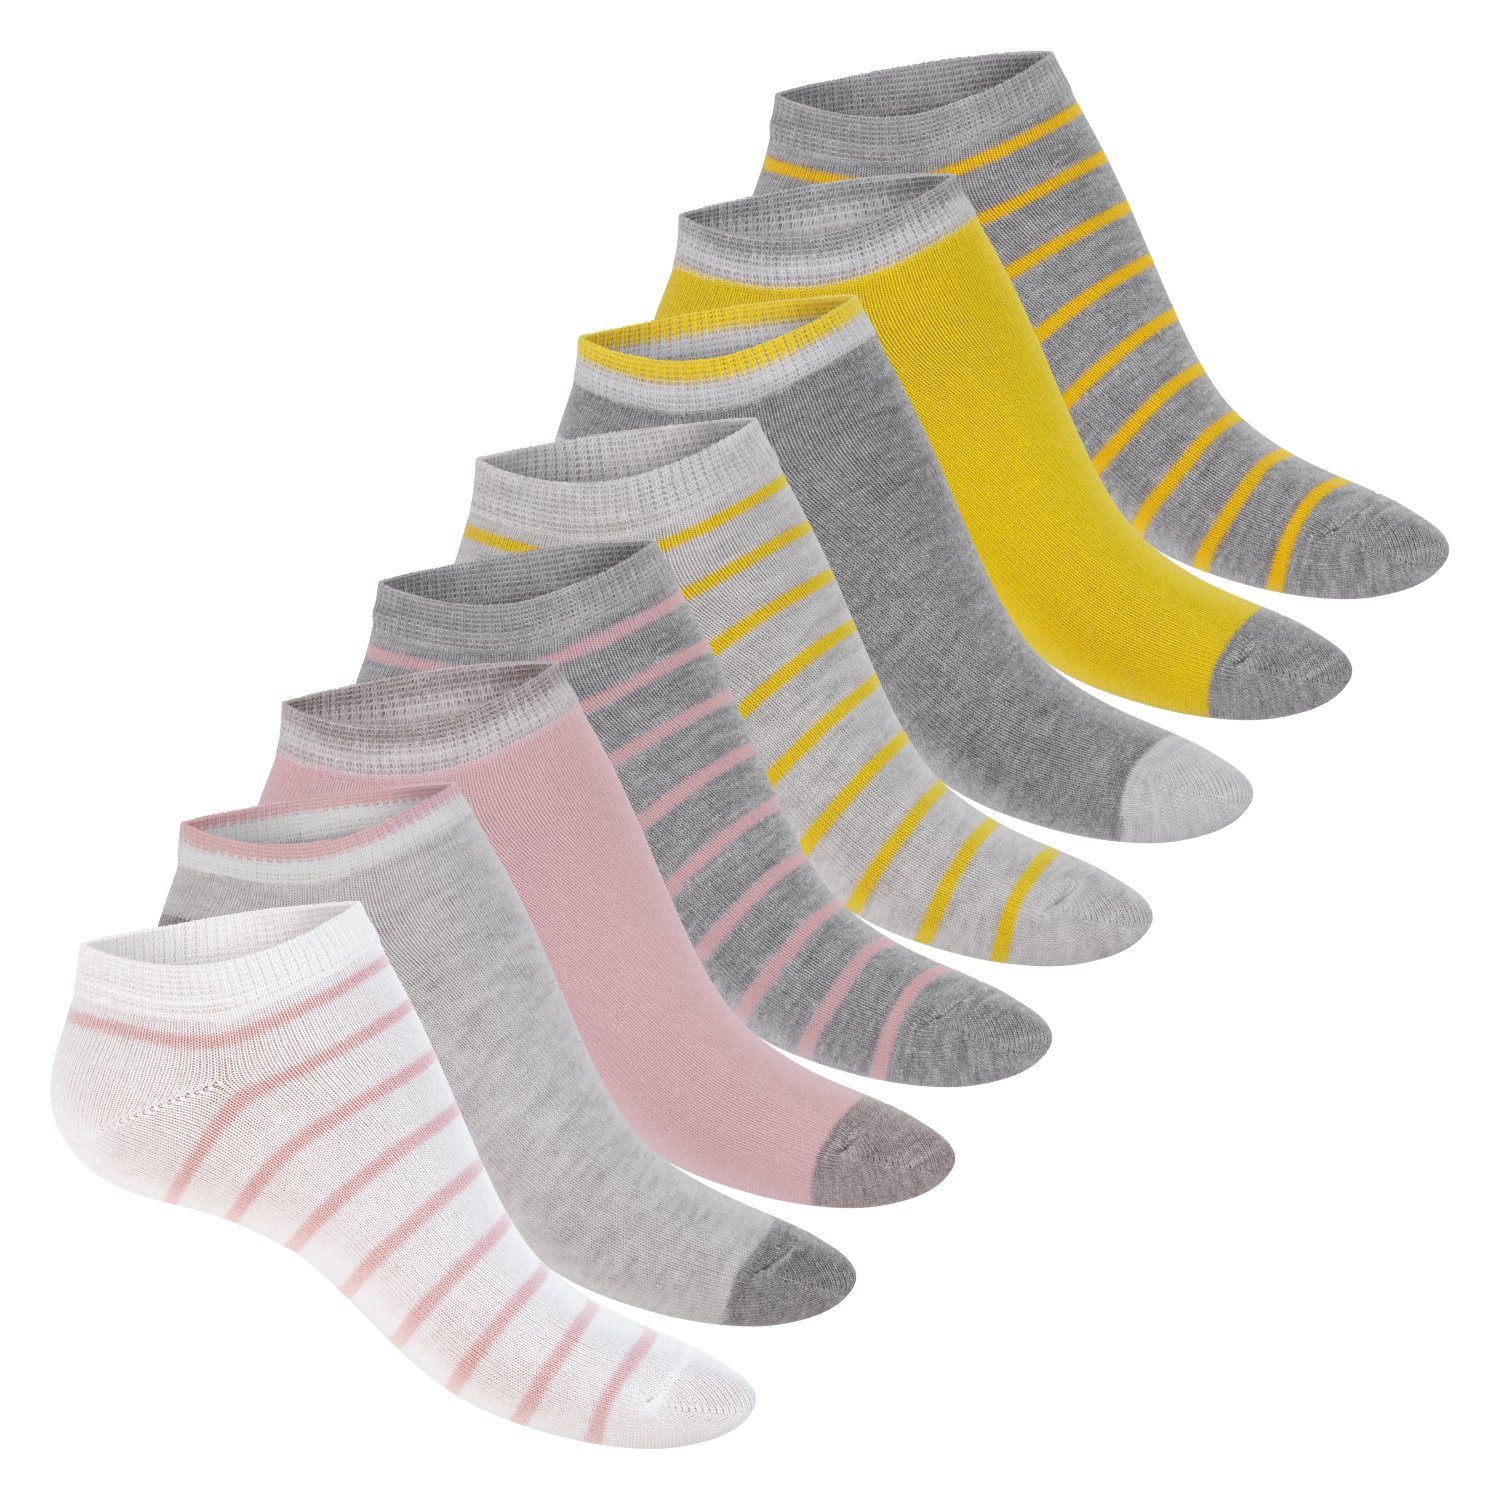 Footstar Sneakersocken süße Damen Sneaker Socken Mehrfarb-Pack (8 Kurze Söckchen Pastelltöne mit Muster Paar)